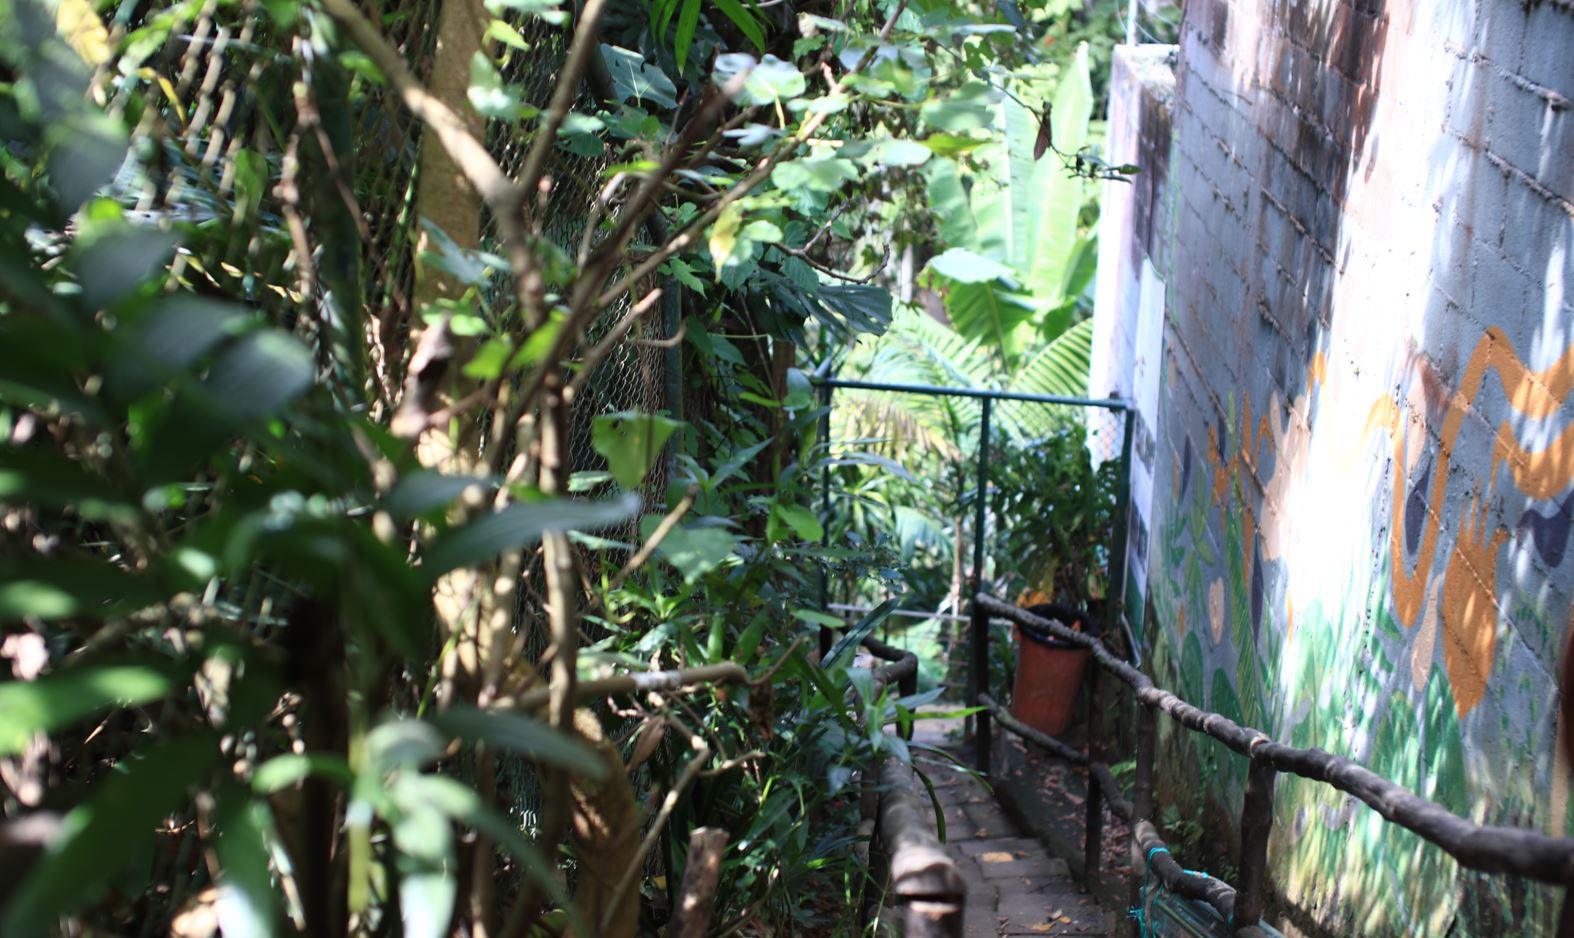 El área boscosa de Vista Hermosa 2, según vecinos, ha sido utilizada para que ingresen criminales a robar en las residencias. (Foto Prensa Libre: Carlos Hernández)